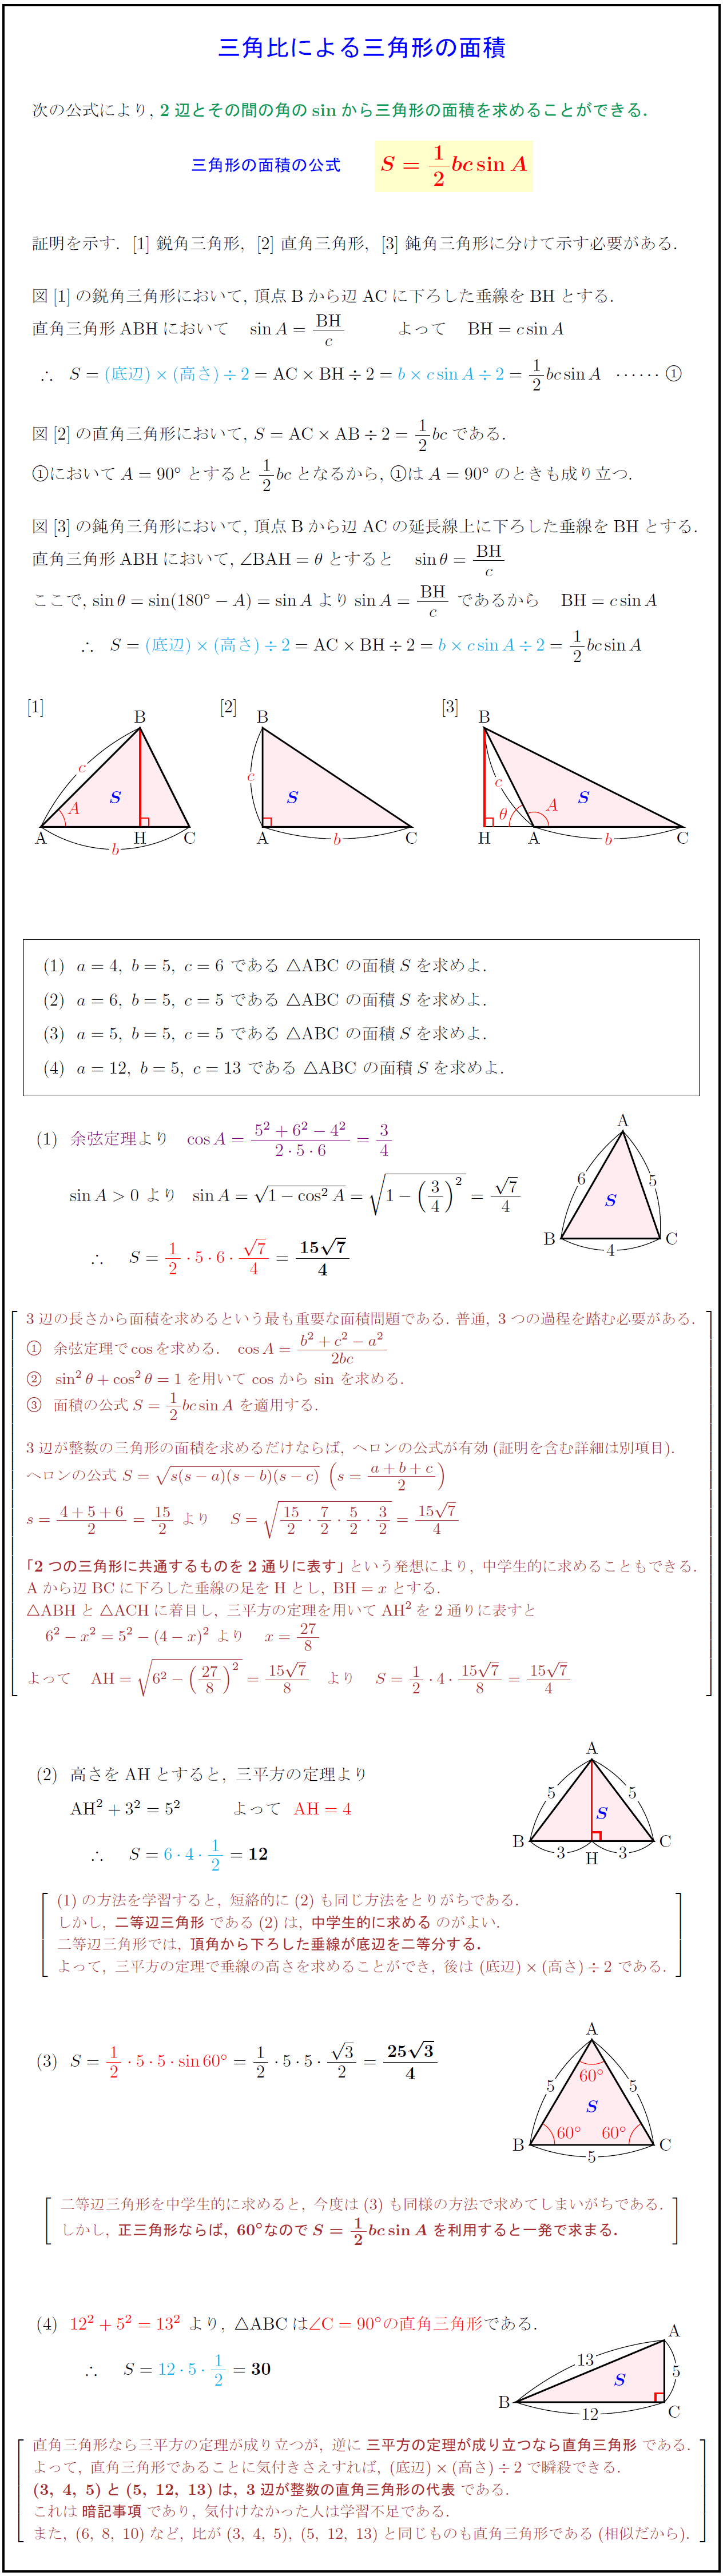 高校数学 三角比による三角形の面積の公式 S 1 2bcsina の証明と